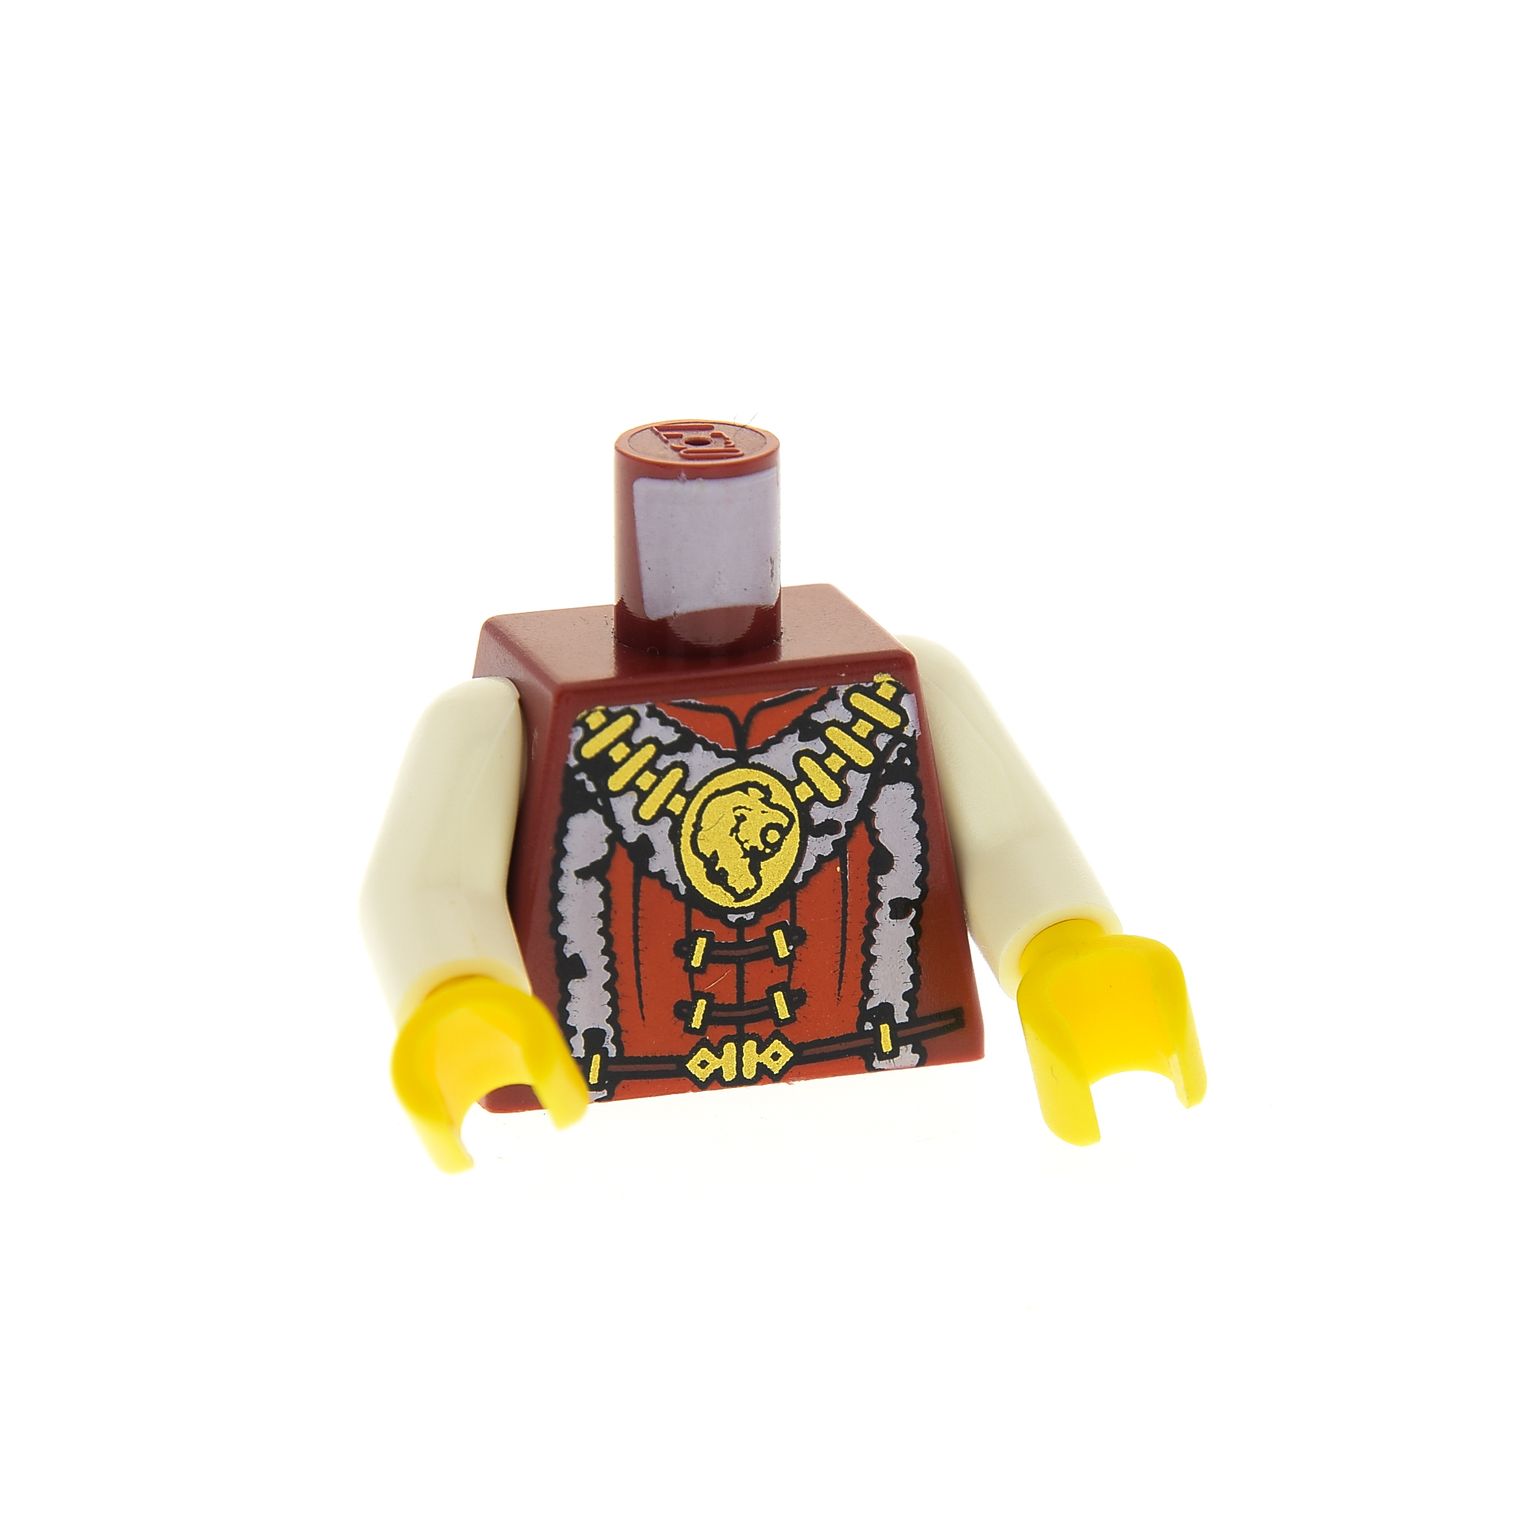 1 x Lego Figur Castle Kingdoms Prinz Torso Fell Löwen Kopf cas470 973pb0697c01 